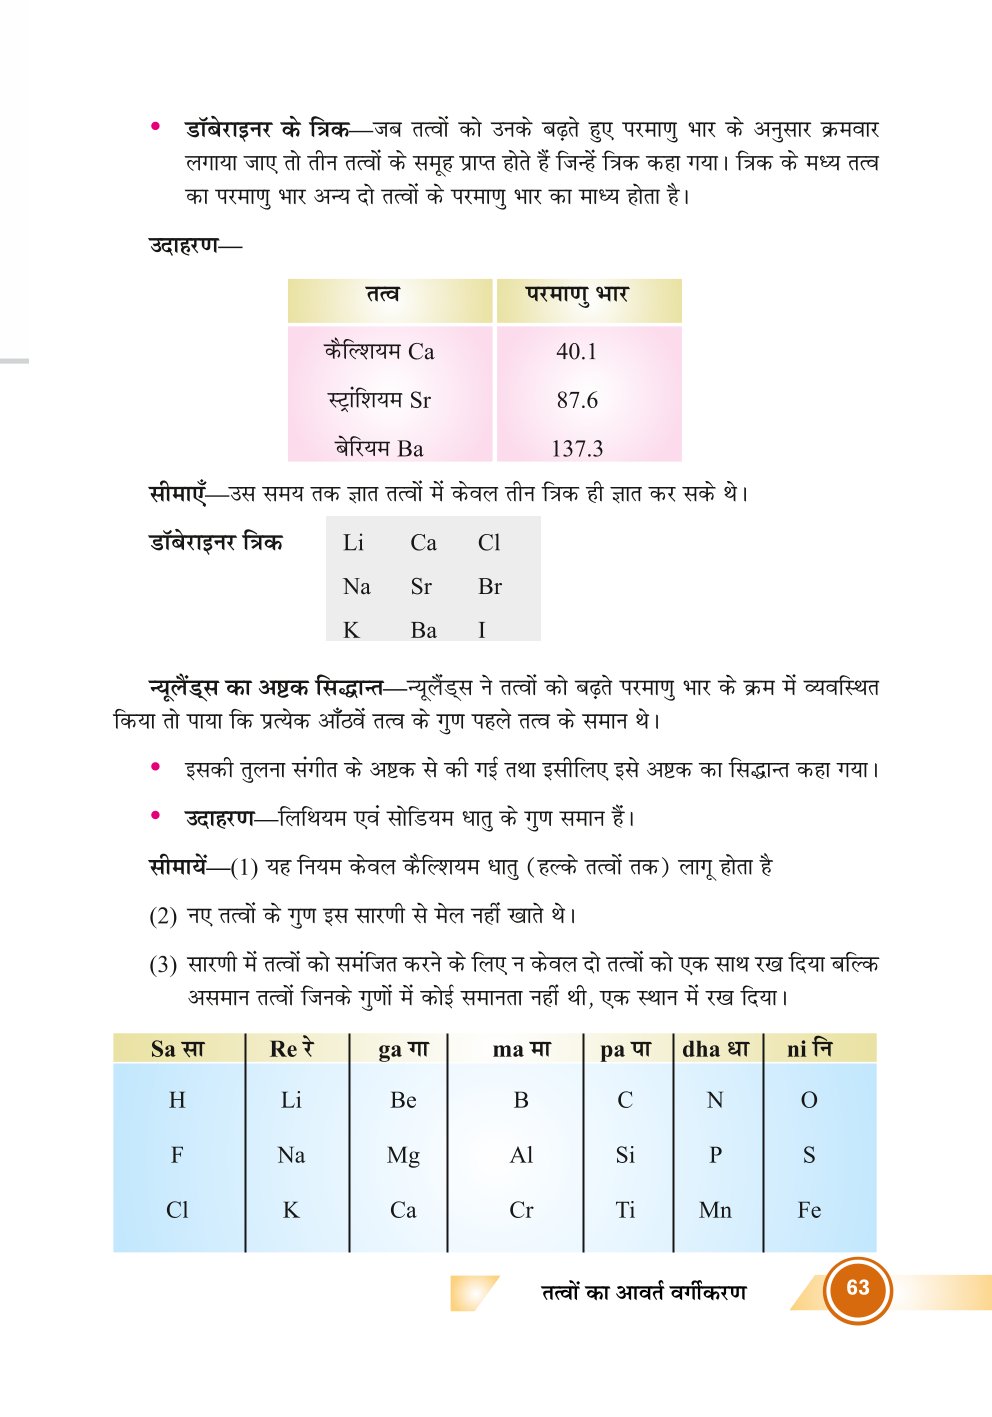 Bihar Board Class 10th Chemistry Notes  Periodic Classification of Elements  Class 10 Chemistry Chapter 4 Rivision Notes PDF  तत्वों का आवर्त वर्गीकरण  बिहार बोर्ड क्लास 10वीं रसायनशास्त्र नोट्स  कक्षा 10 रसायन विज्ञान हिंदी में नोट्स